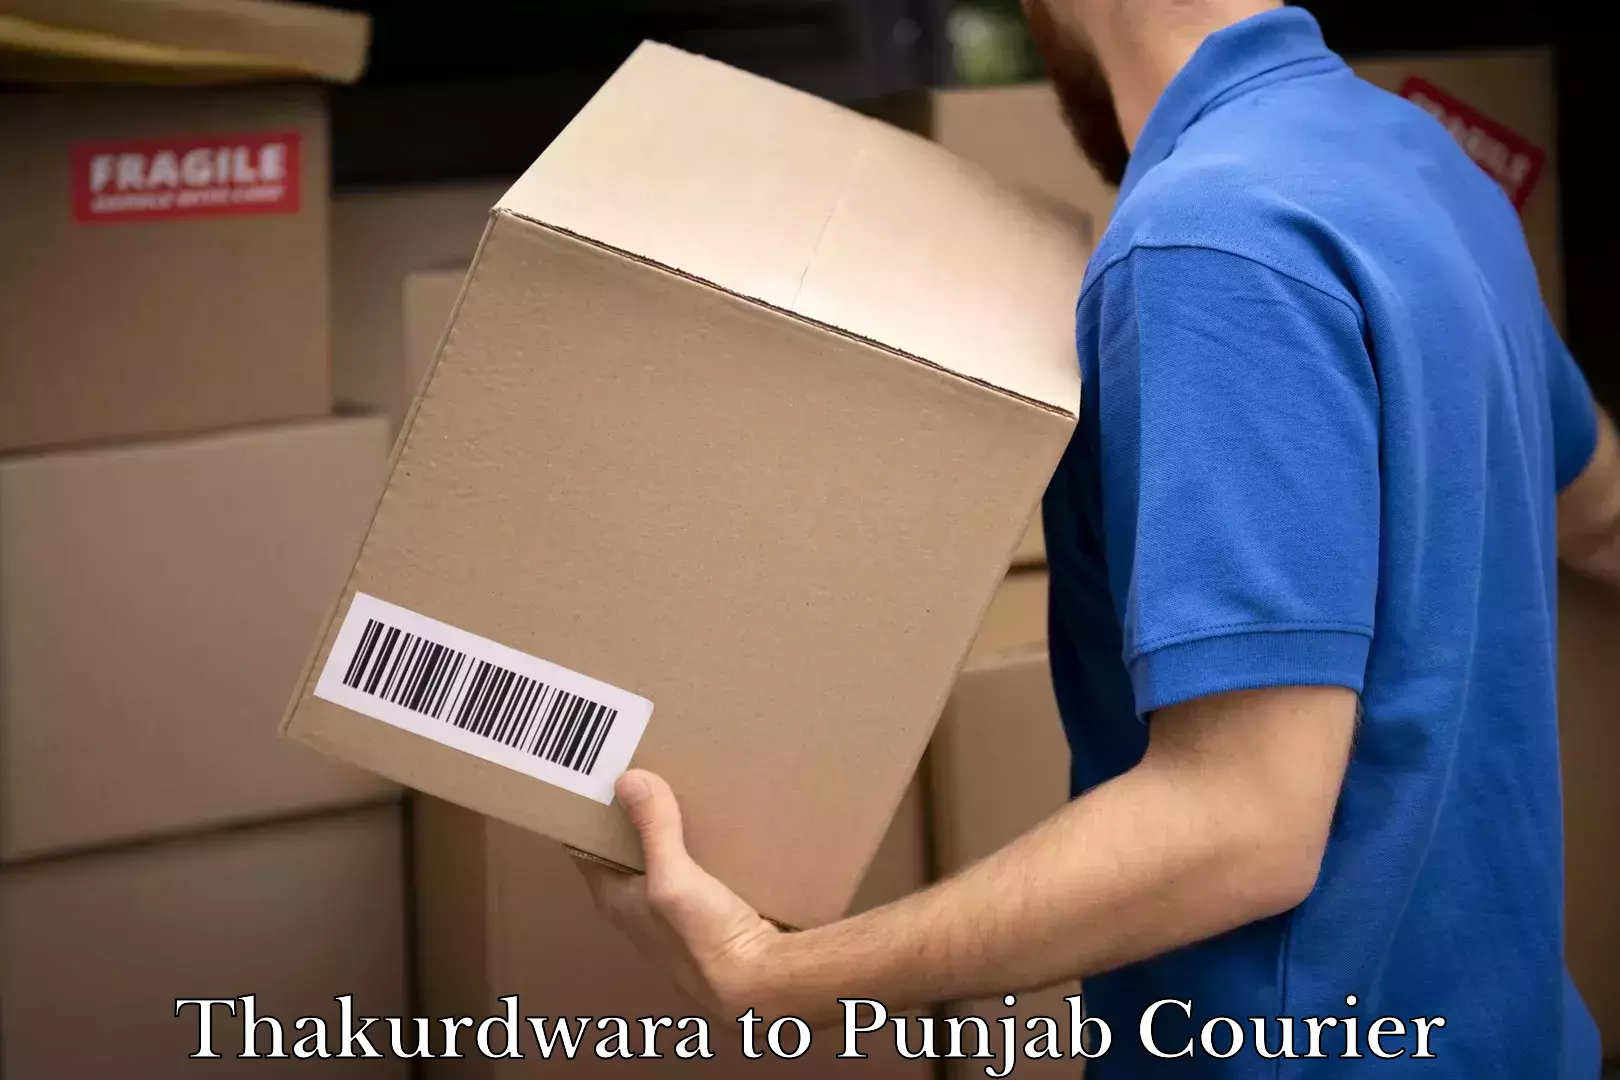 Global logistics network Thakurdwara to Punjab